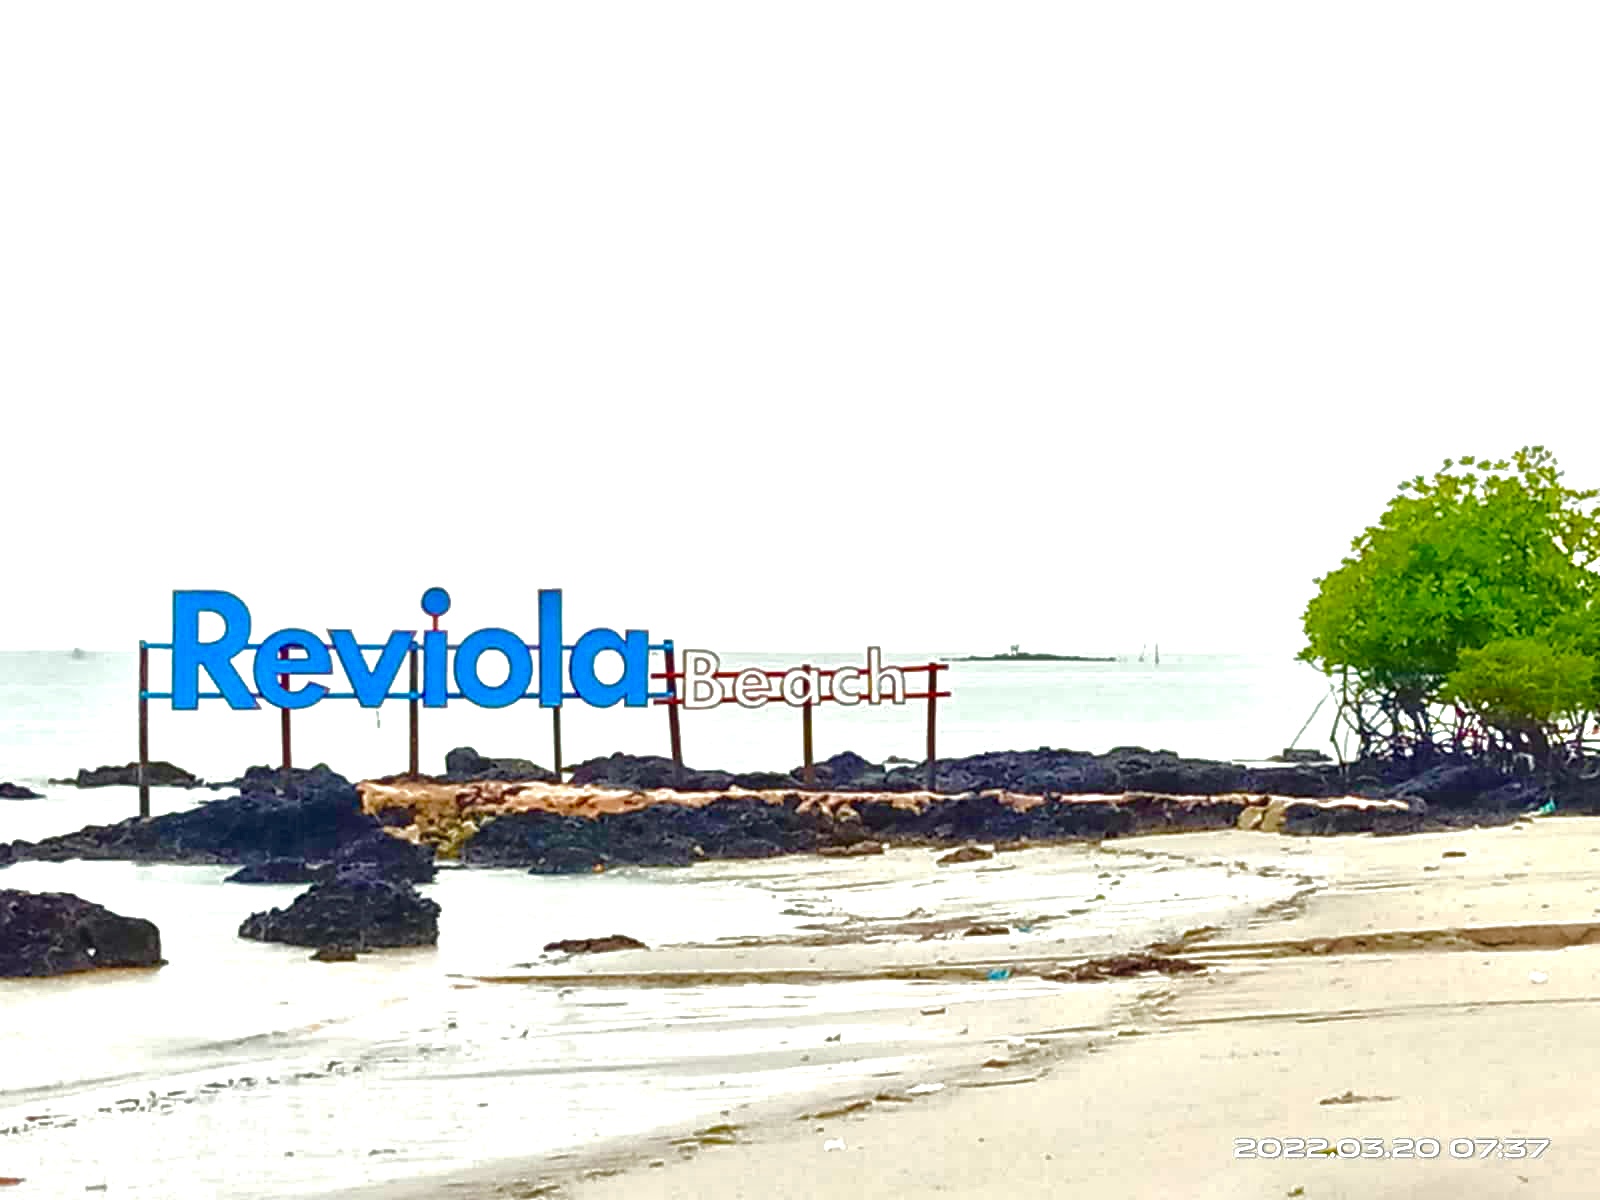 Reviola Beach galang baru kepulauan Riau